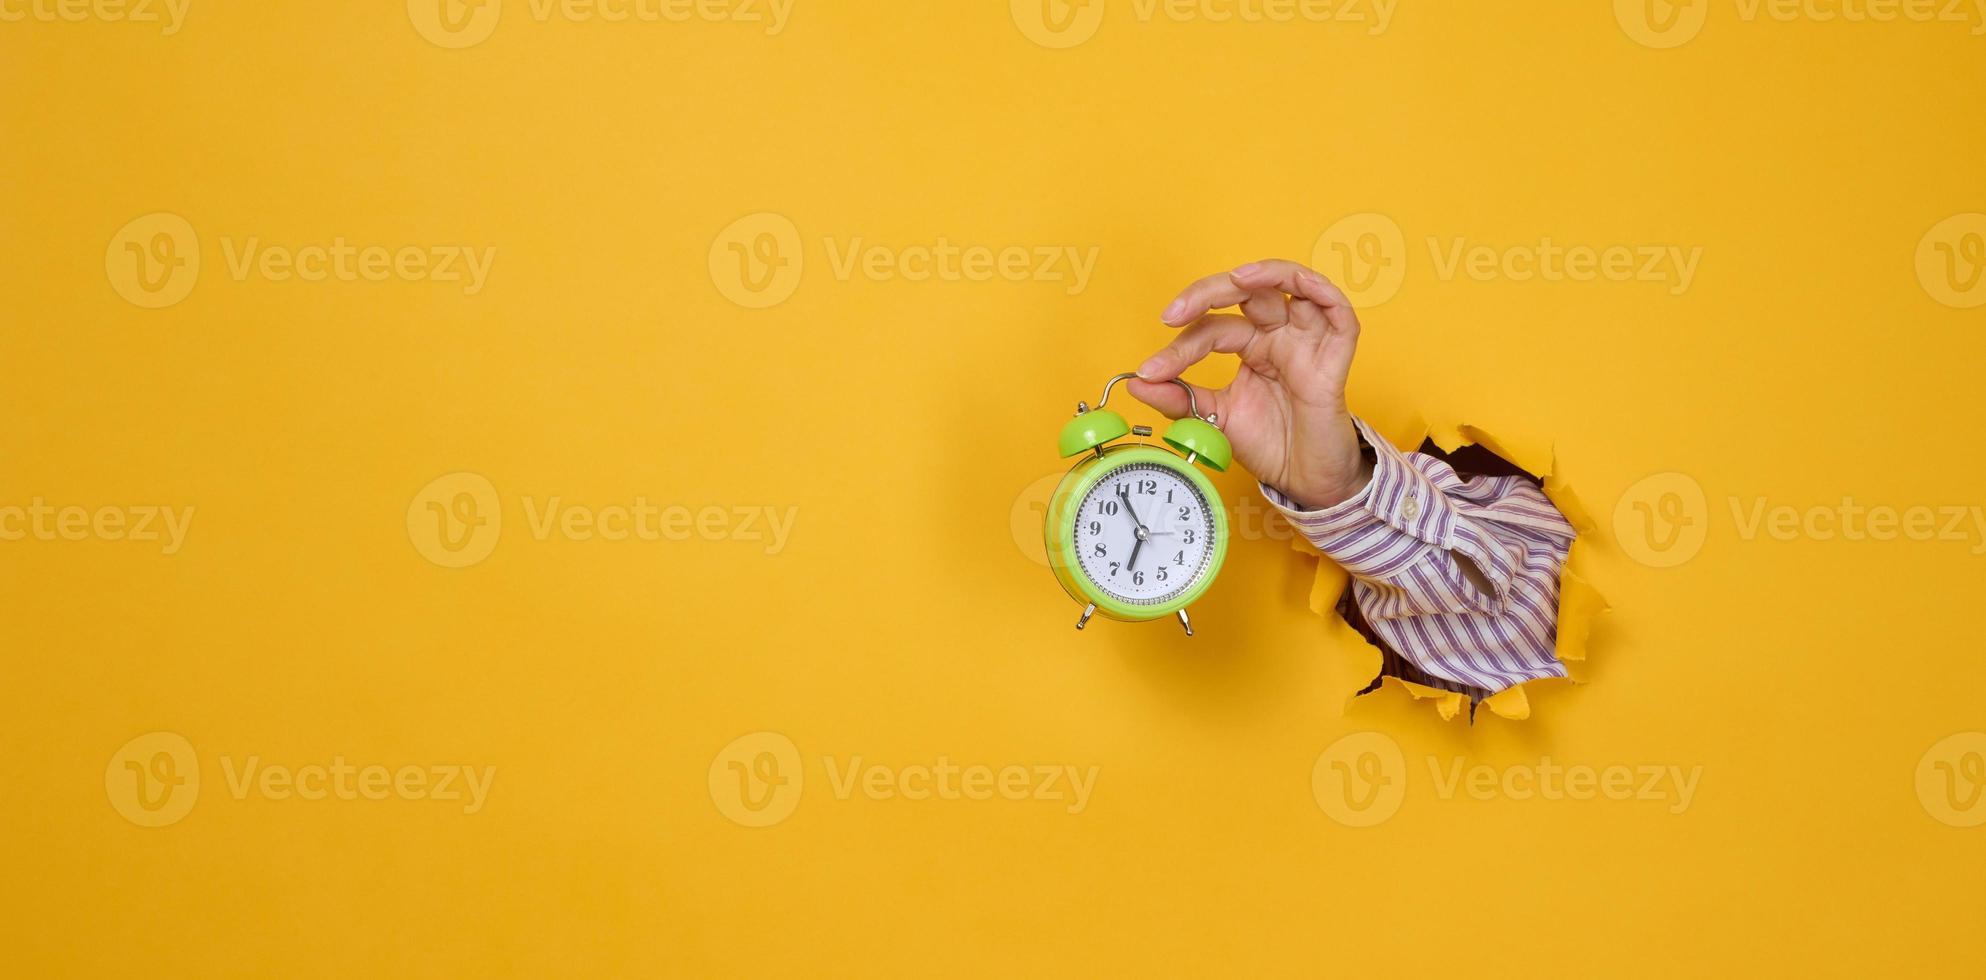 la main de la femme tient un réveil vert rond, le temps est de cinq minutes à sept heures du matin. une partie du corps sort d'un trou déchiré sur un fond de papier jaune. photo